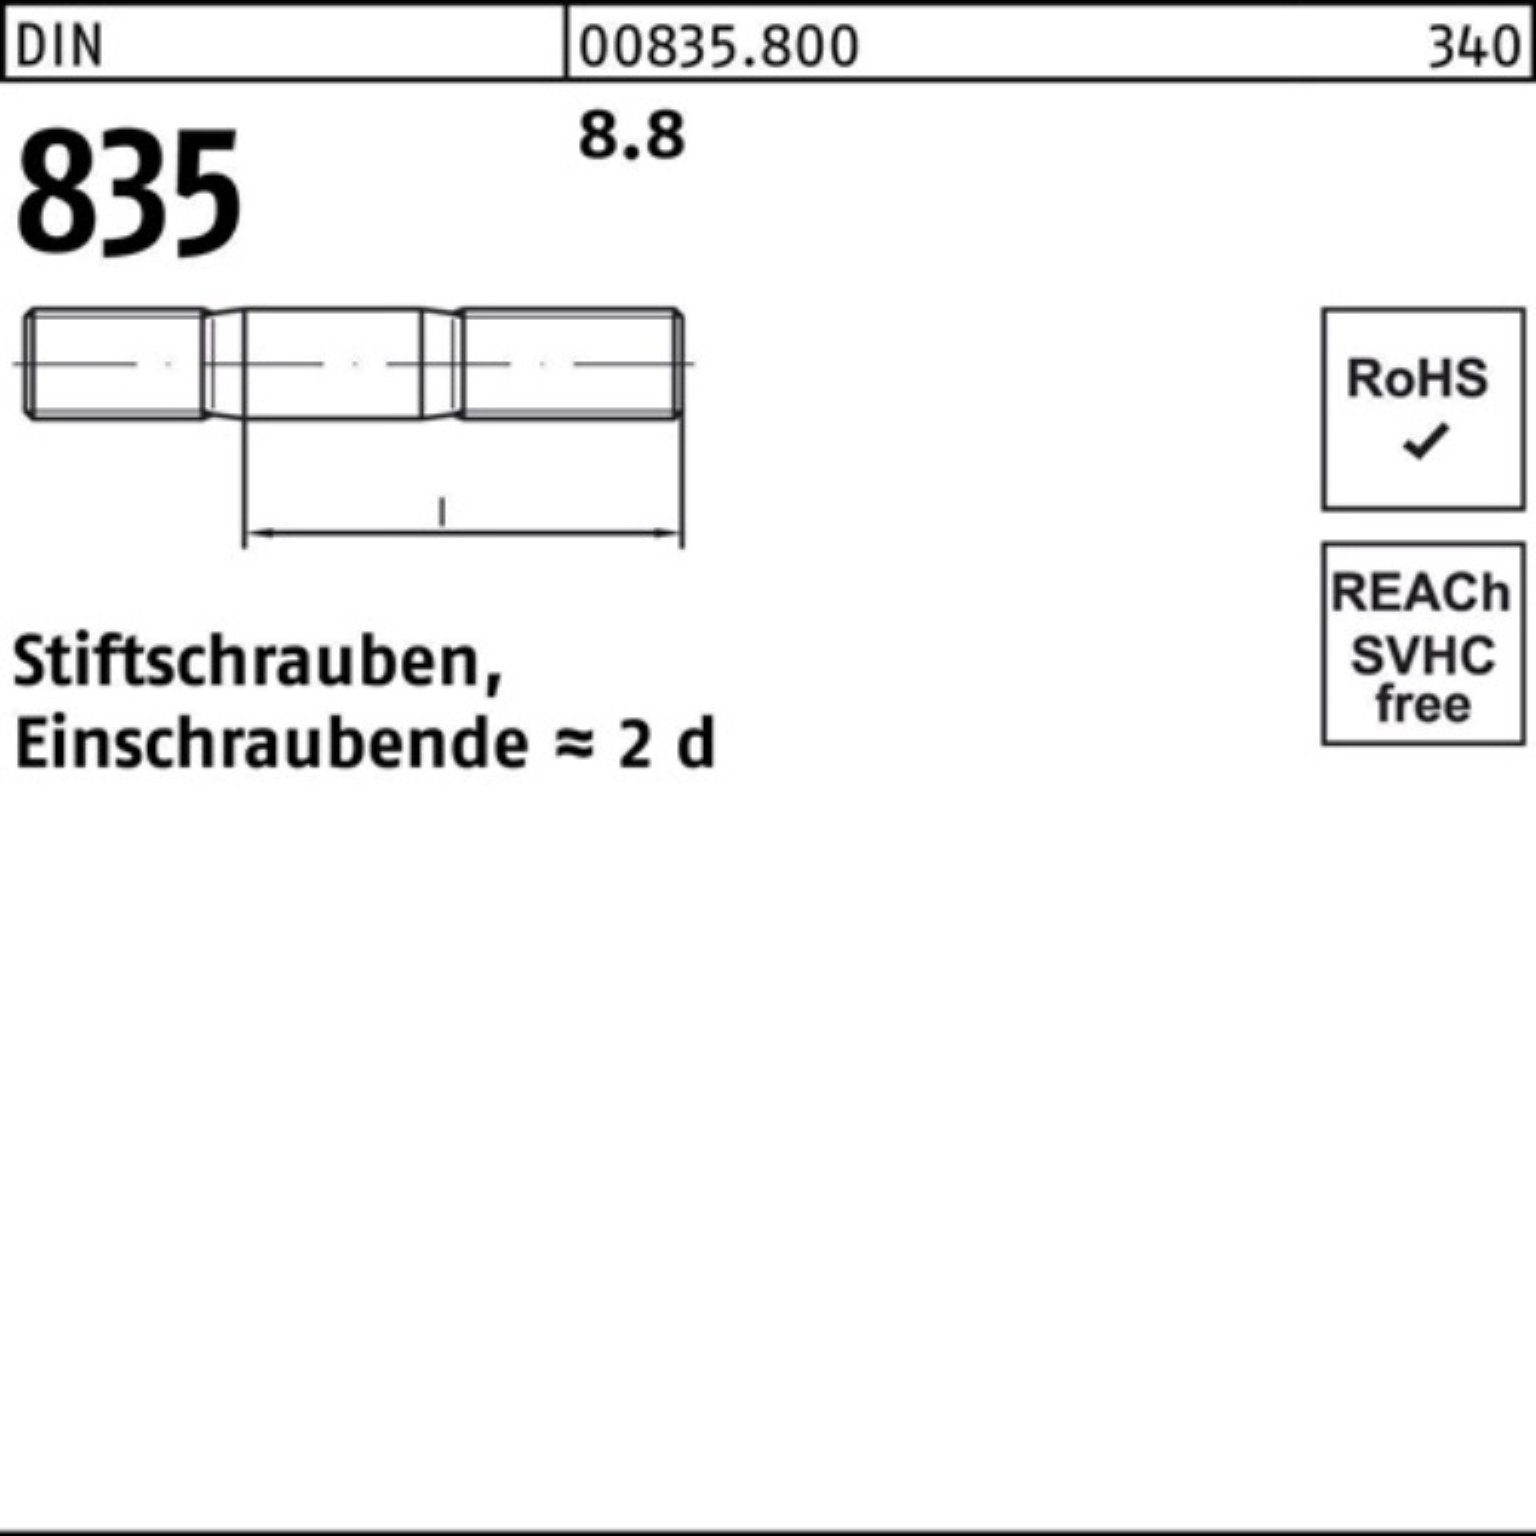 Pack Stiftschraube 8.8 Stiftschraube 835 M10x 50 Reyher DIN 100er Stü Einschraubende=2d 60